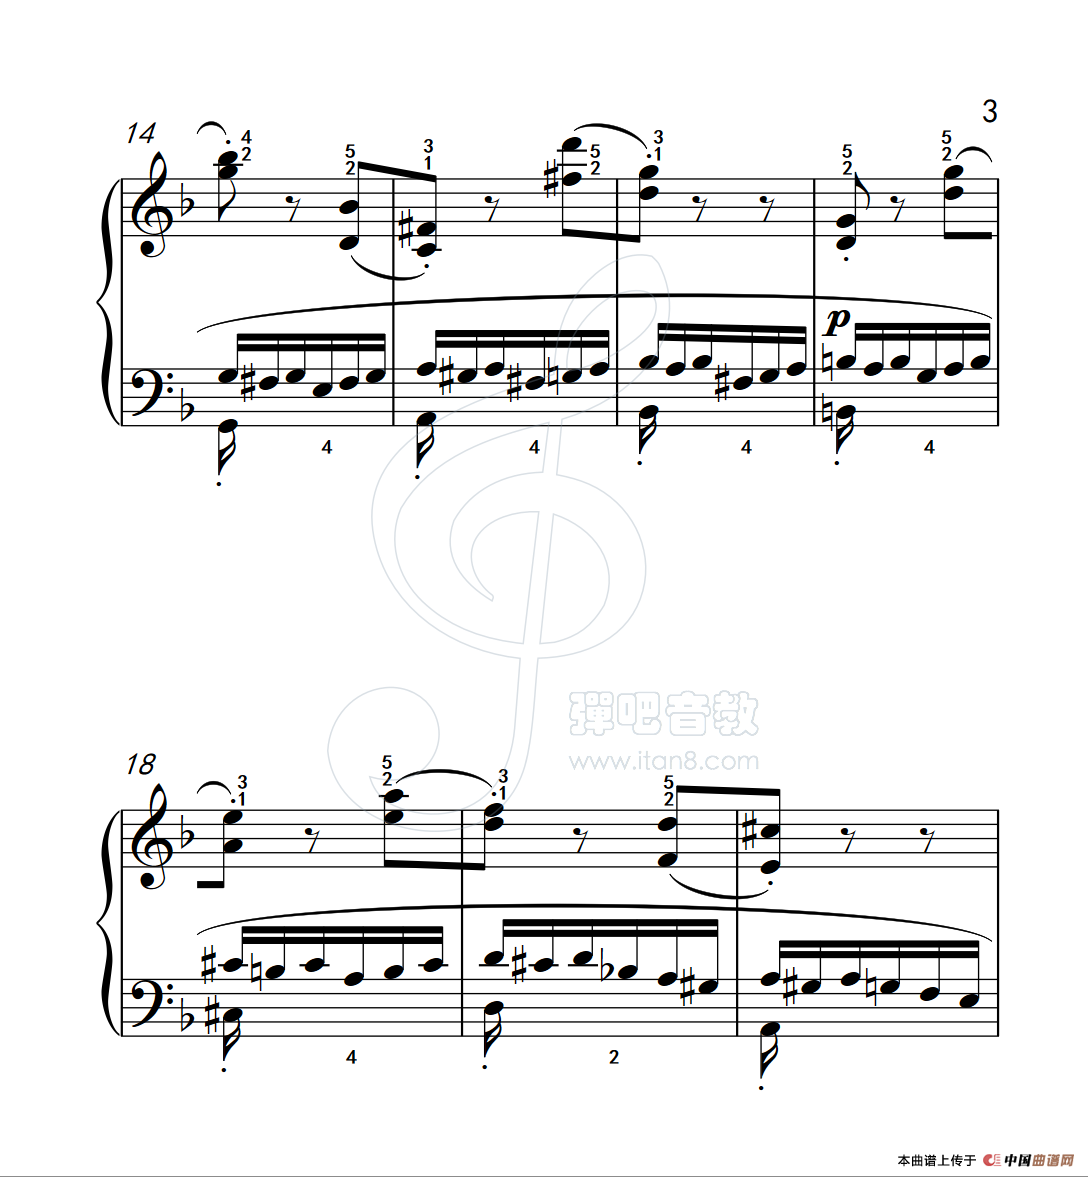 《练习曲 39》钢琴曲谱图分享